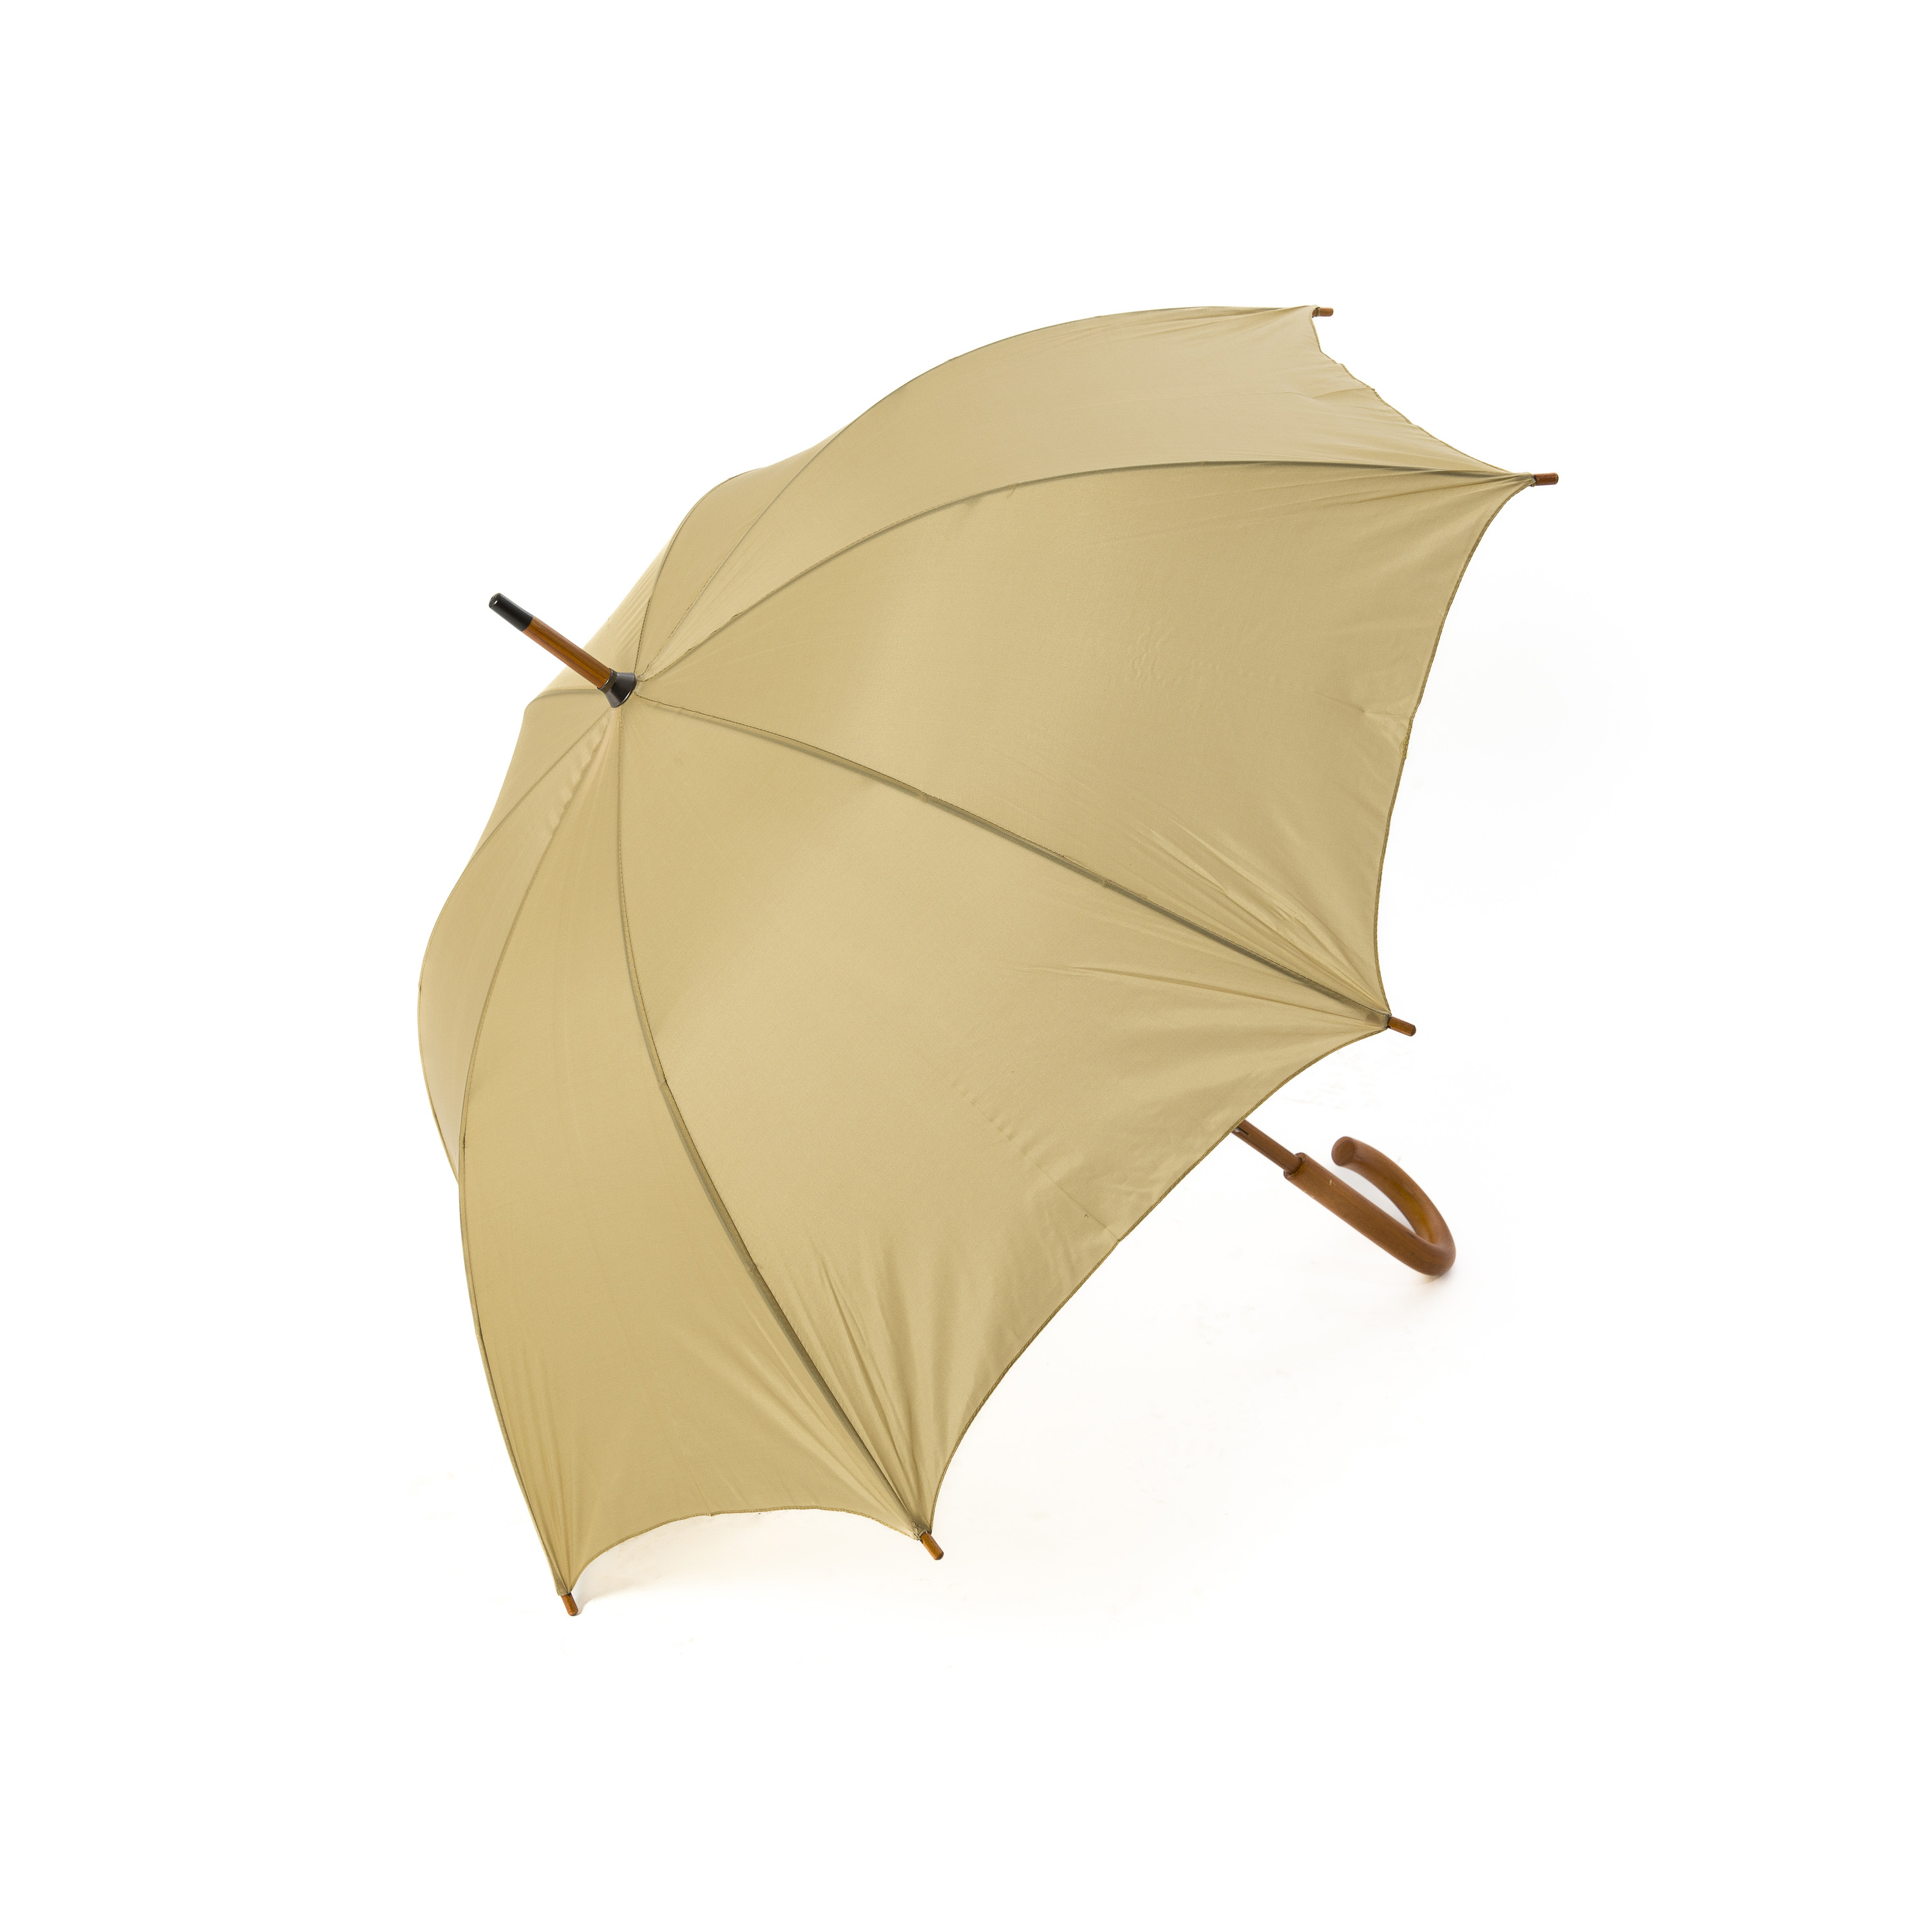 Photo n°2 de Parapluie beige